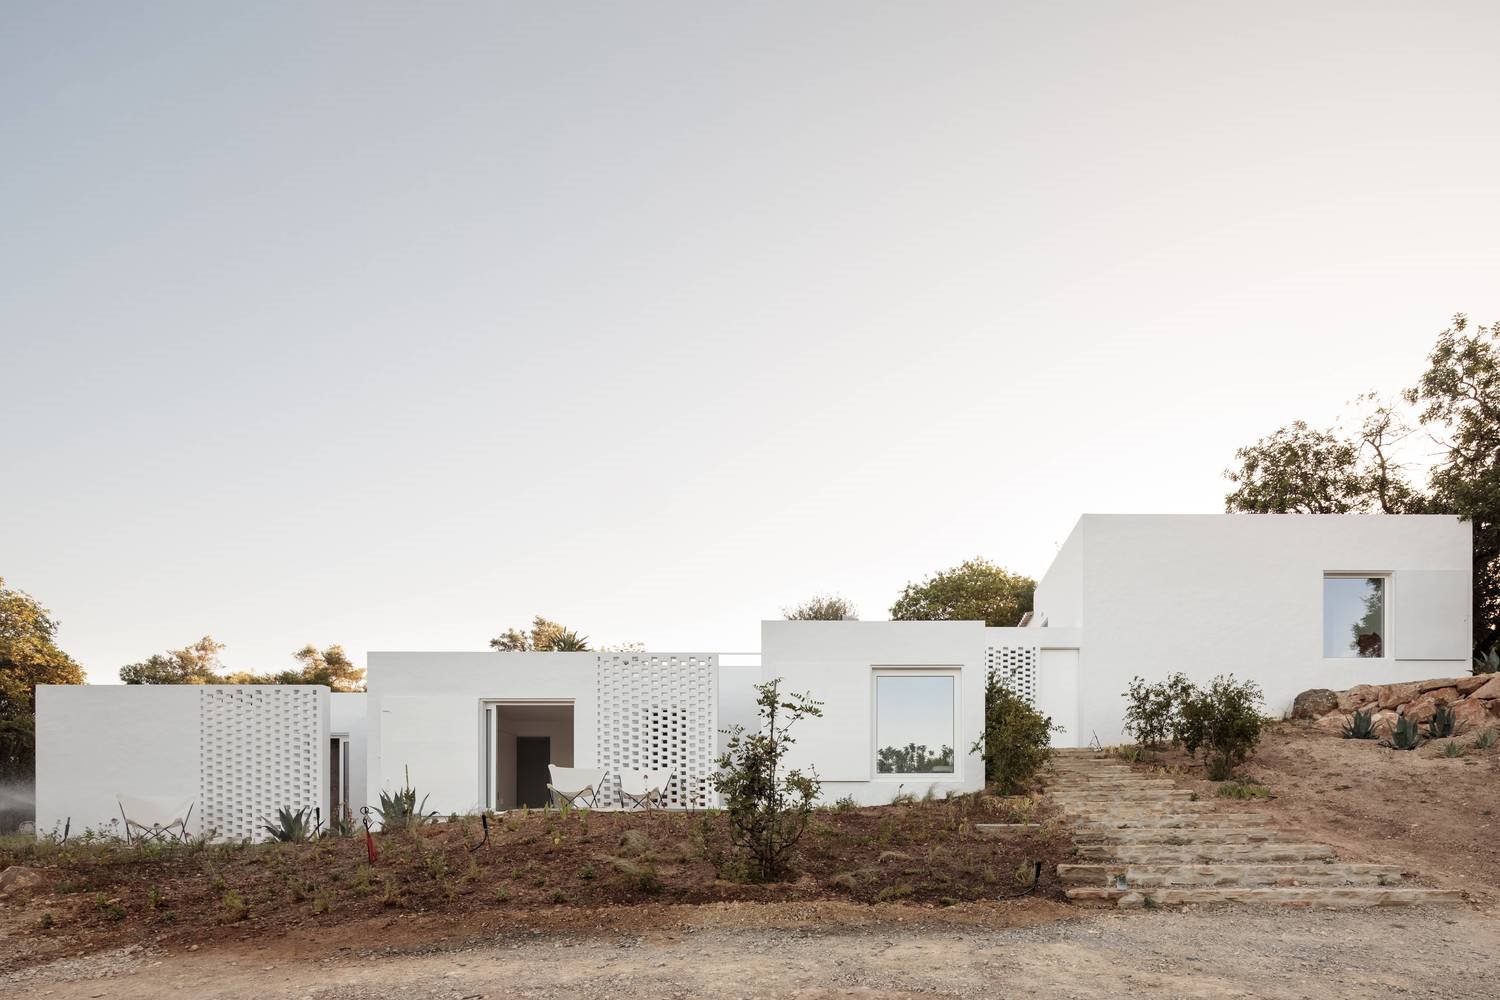 Casa de vacaciones en el algarve en Portugal con fachada e interiores de color blanco fachada